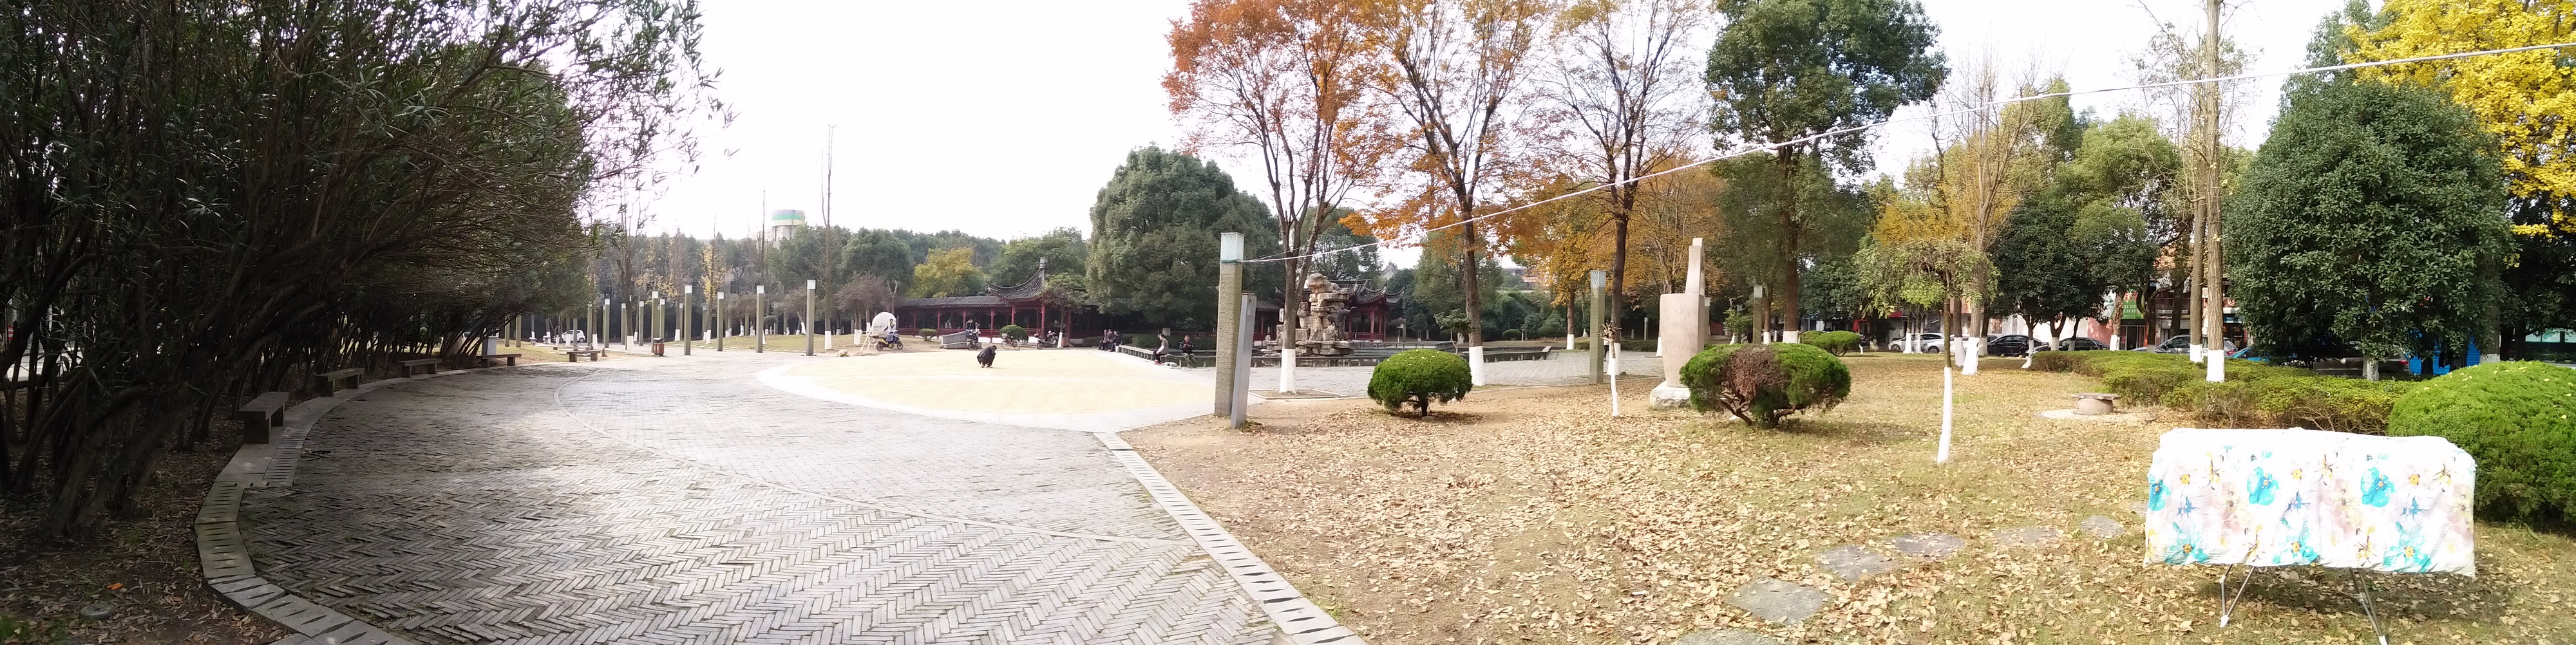 慈城孔庙公园